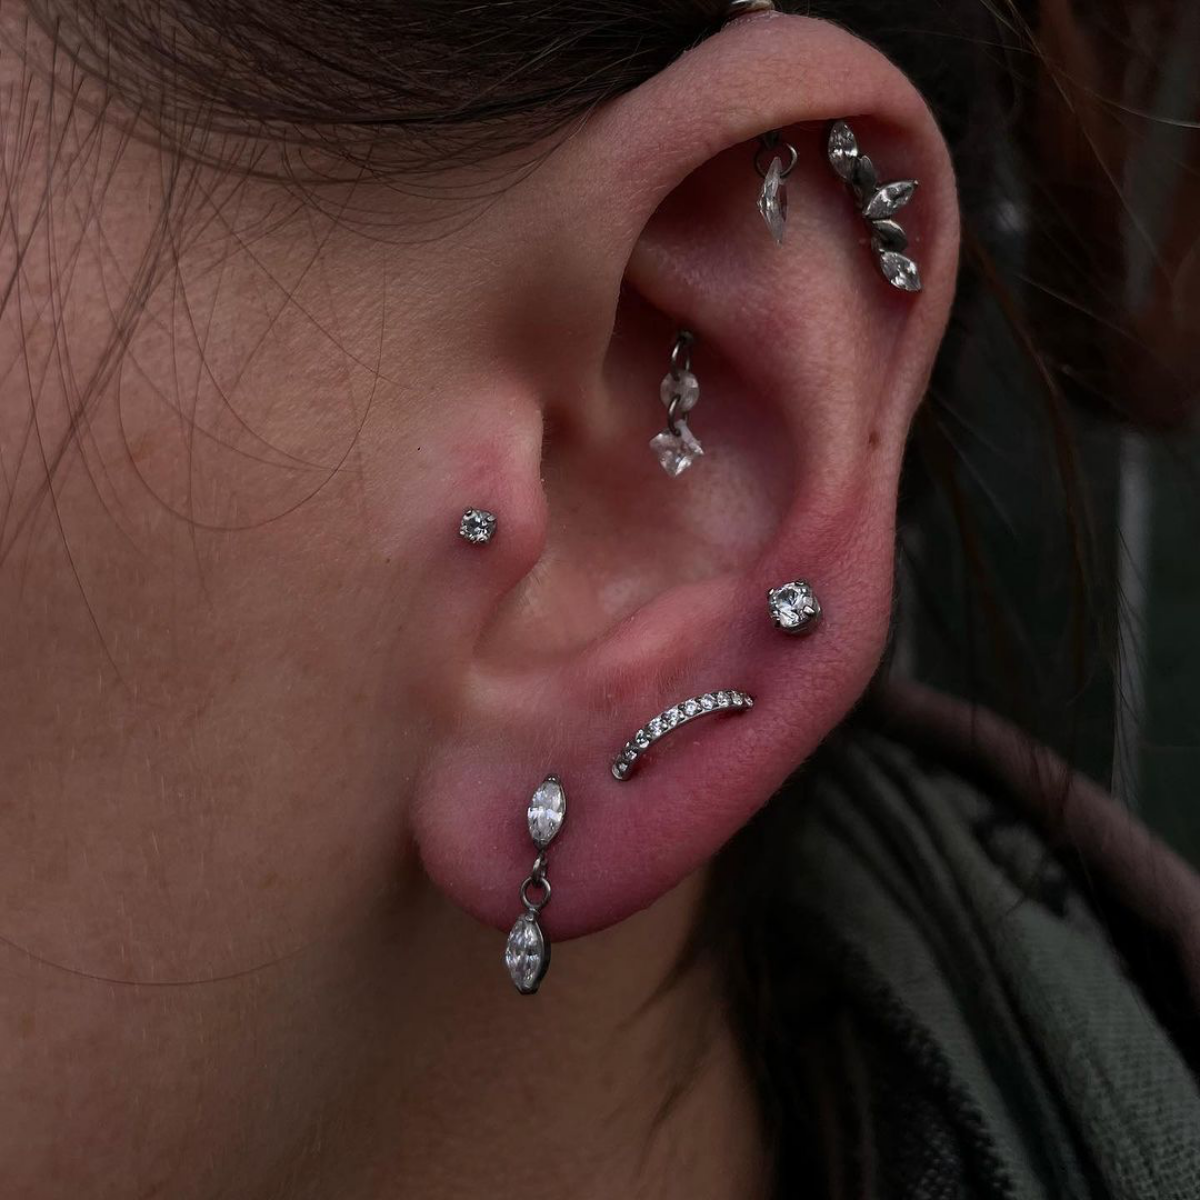 multi piercing design on ear